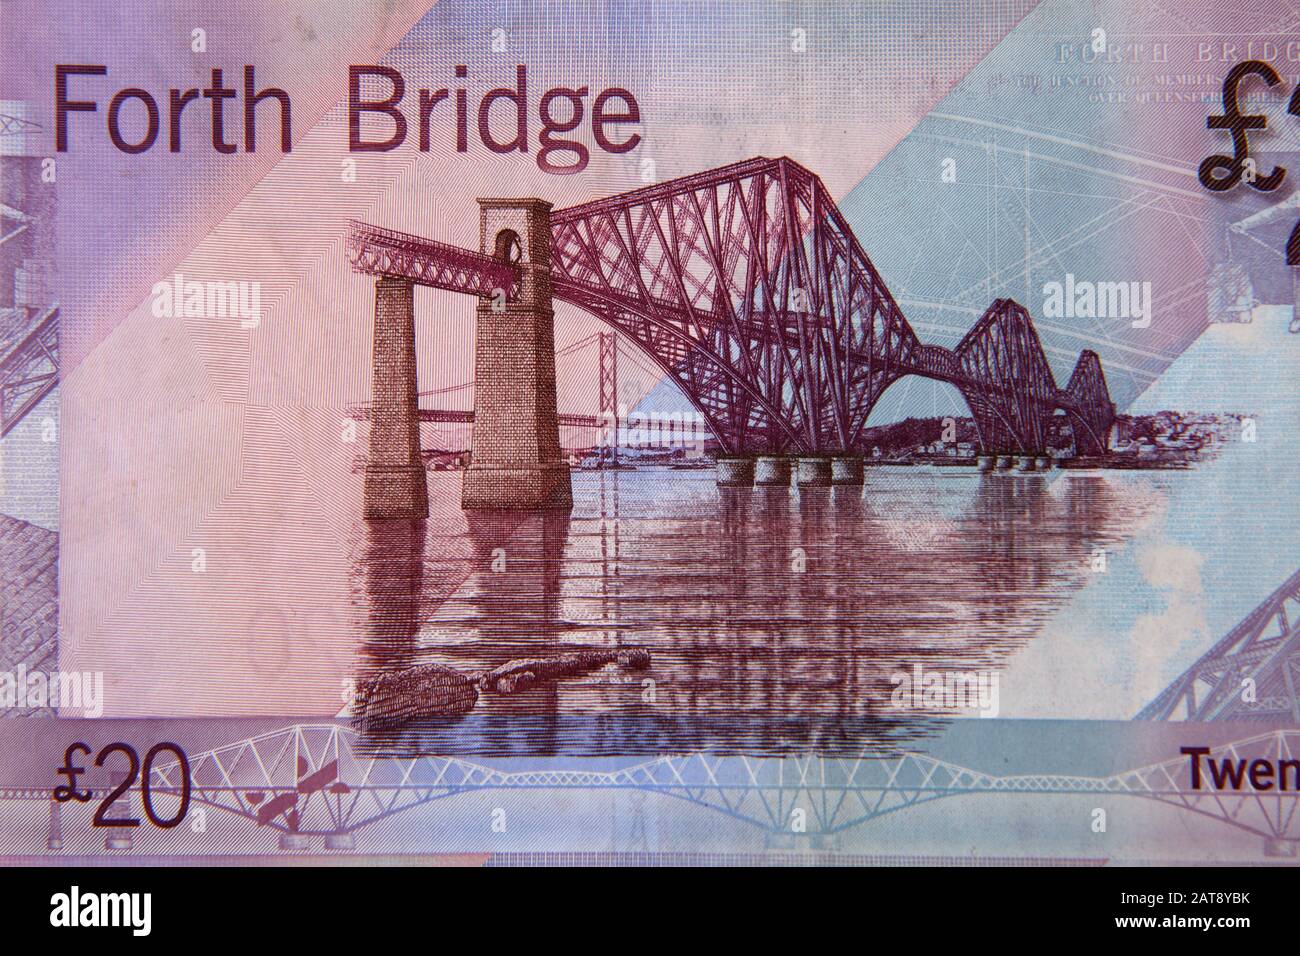 Forth Bridge Auf der Rückseite der Bank of Scotland Ten Pound Note dargestellt Stockfoto